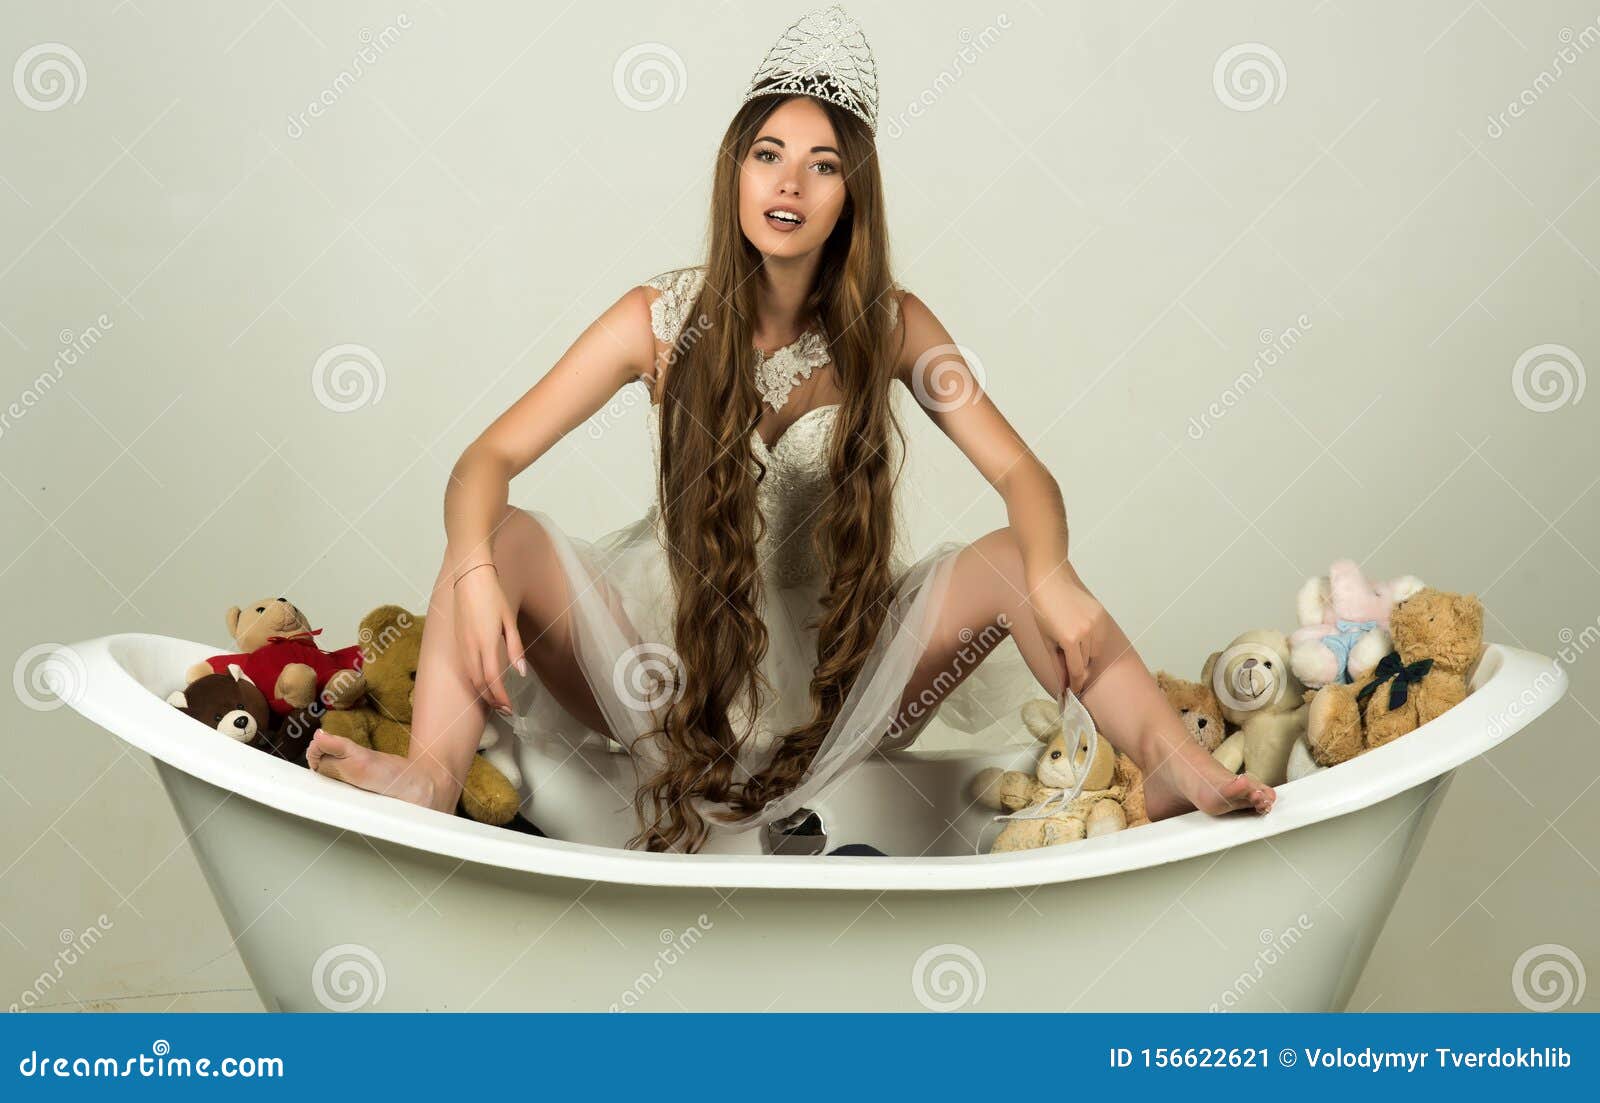 Girl Sitting On Bath Tub On Grey Background Stock Image Image Of